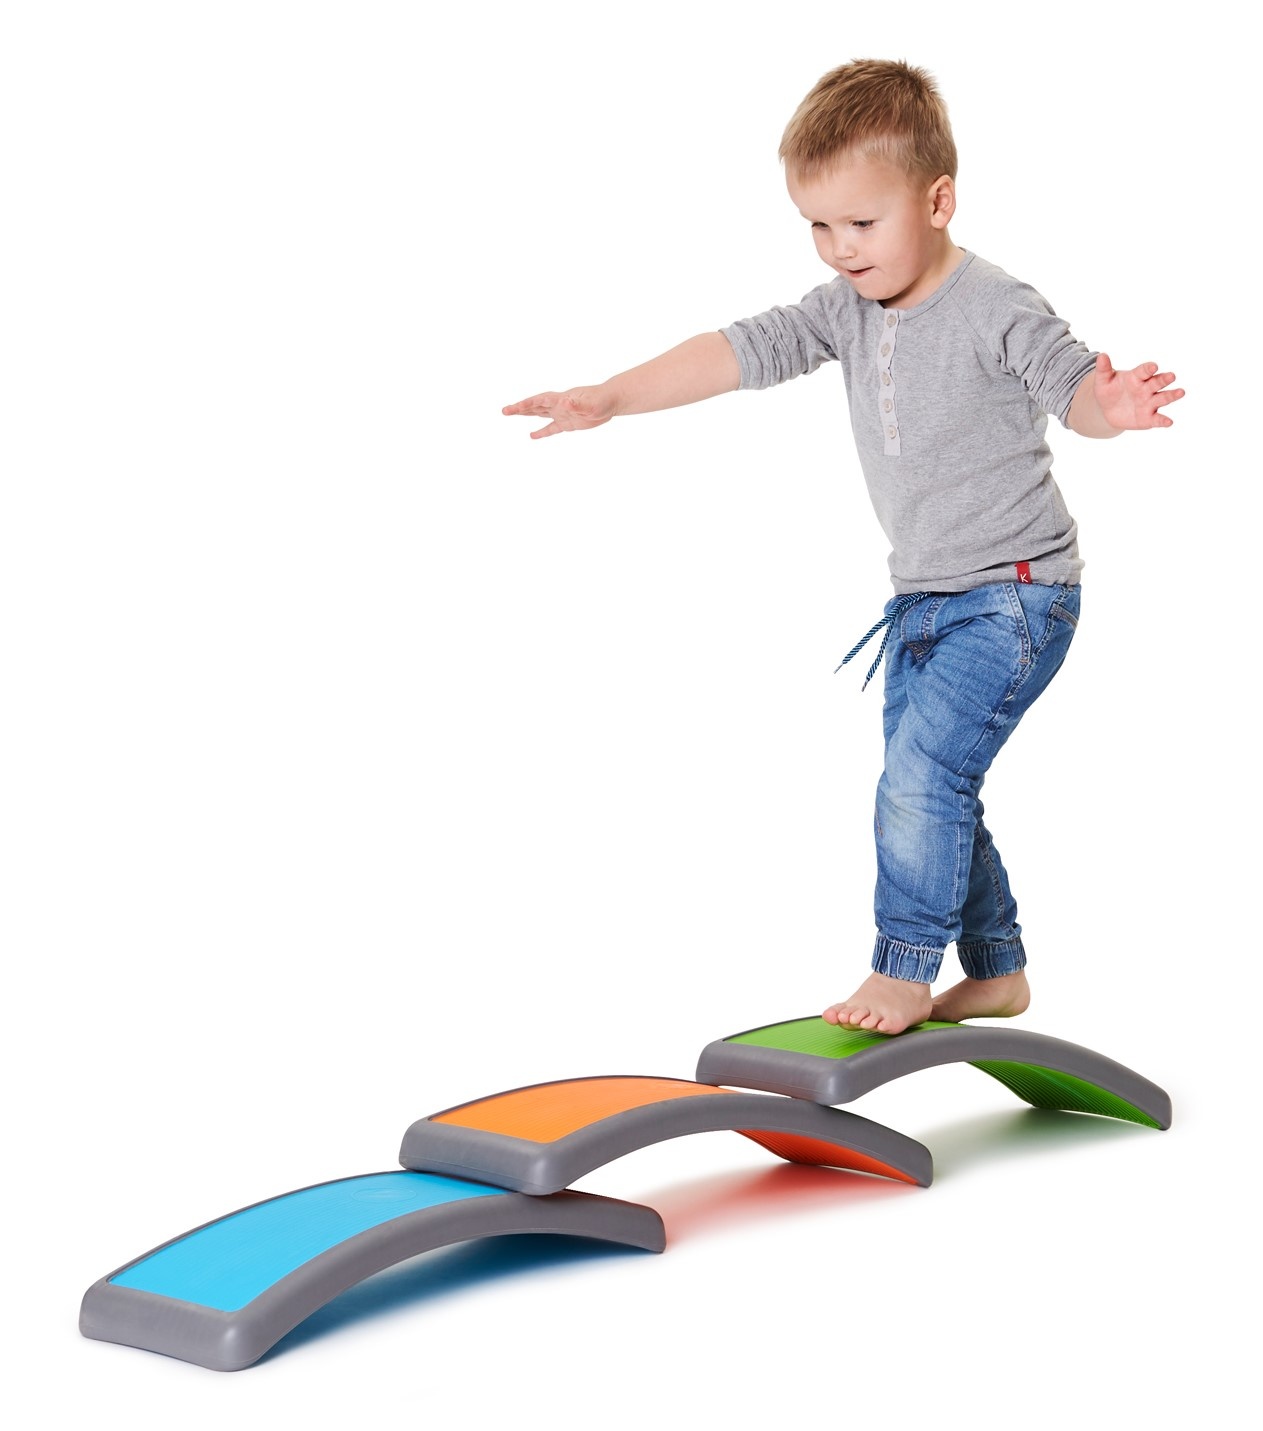 Planche d'équilibre pour enfants - planche a bascule lot de 3 